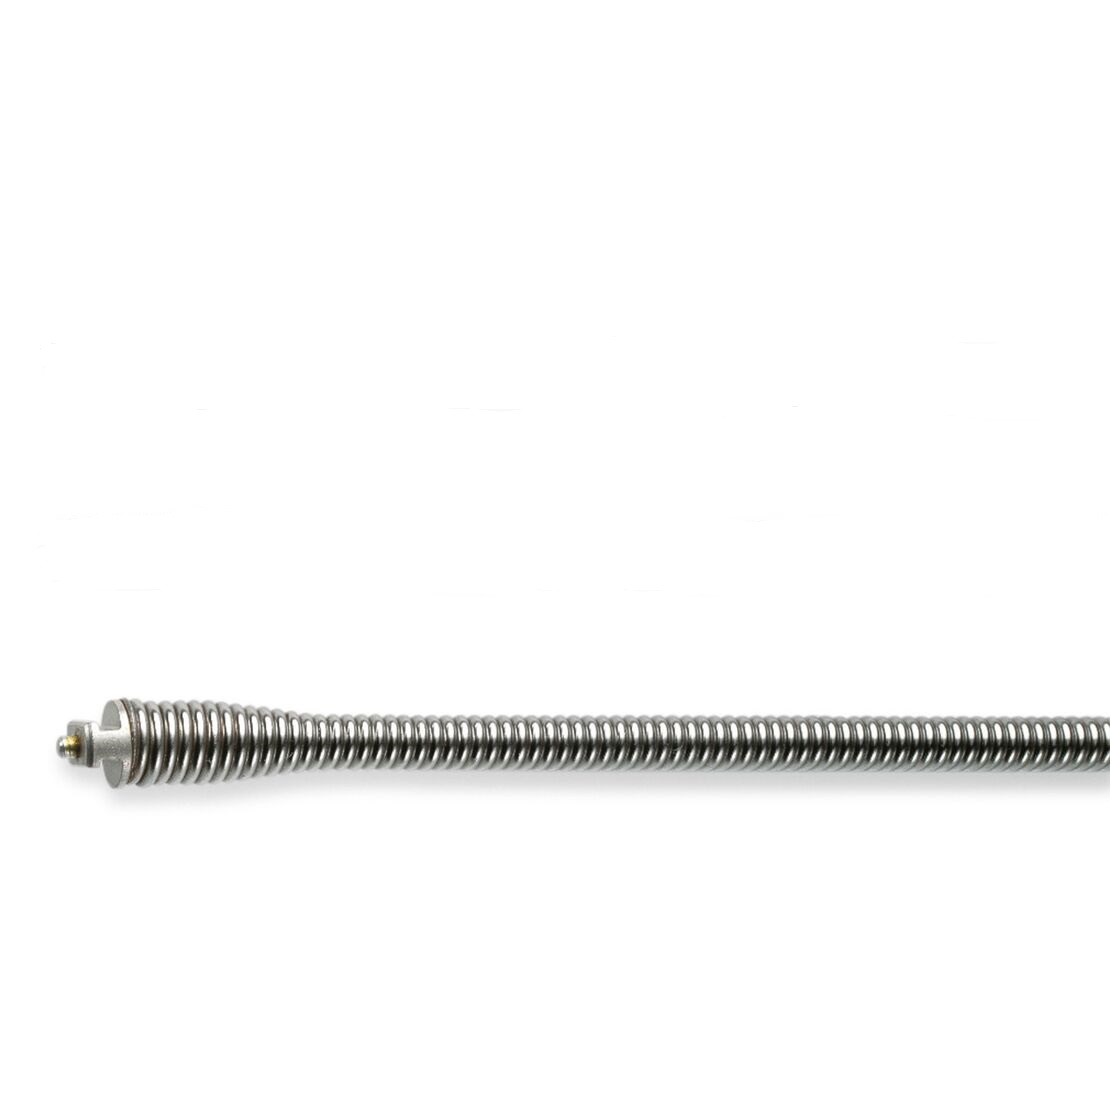 Adapterspirale versch. Ausführungen 6,4 - 10 mm, bis zu 10 m Länge